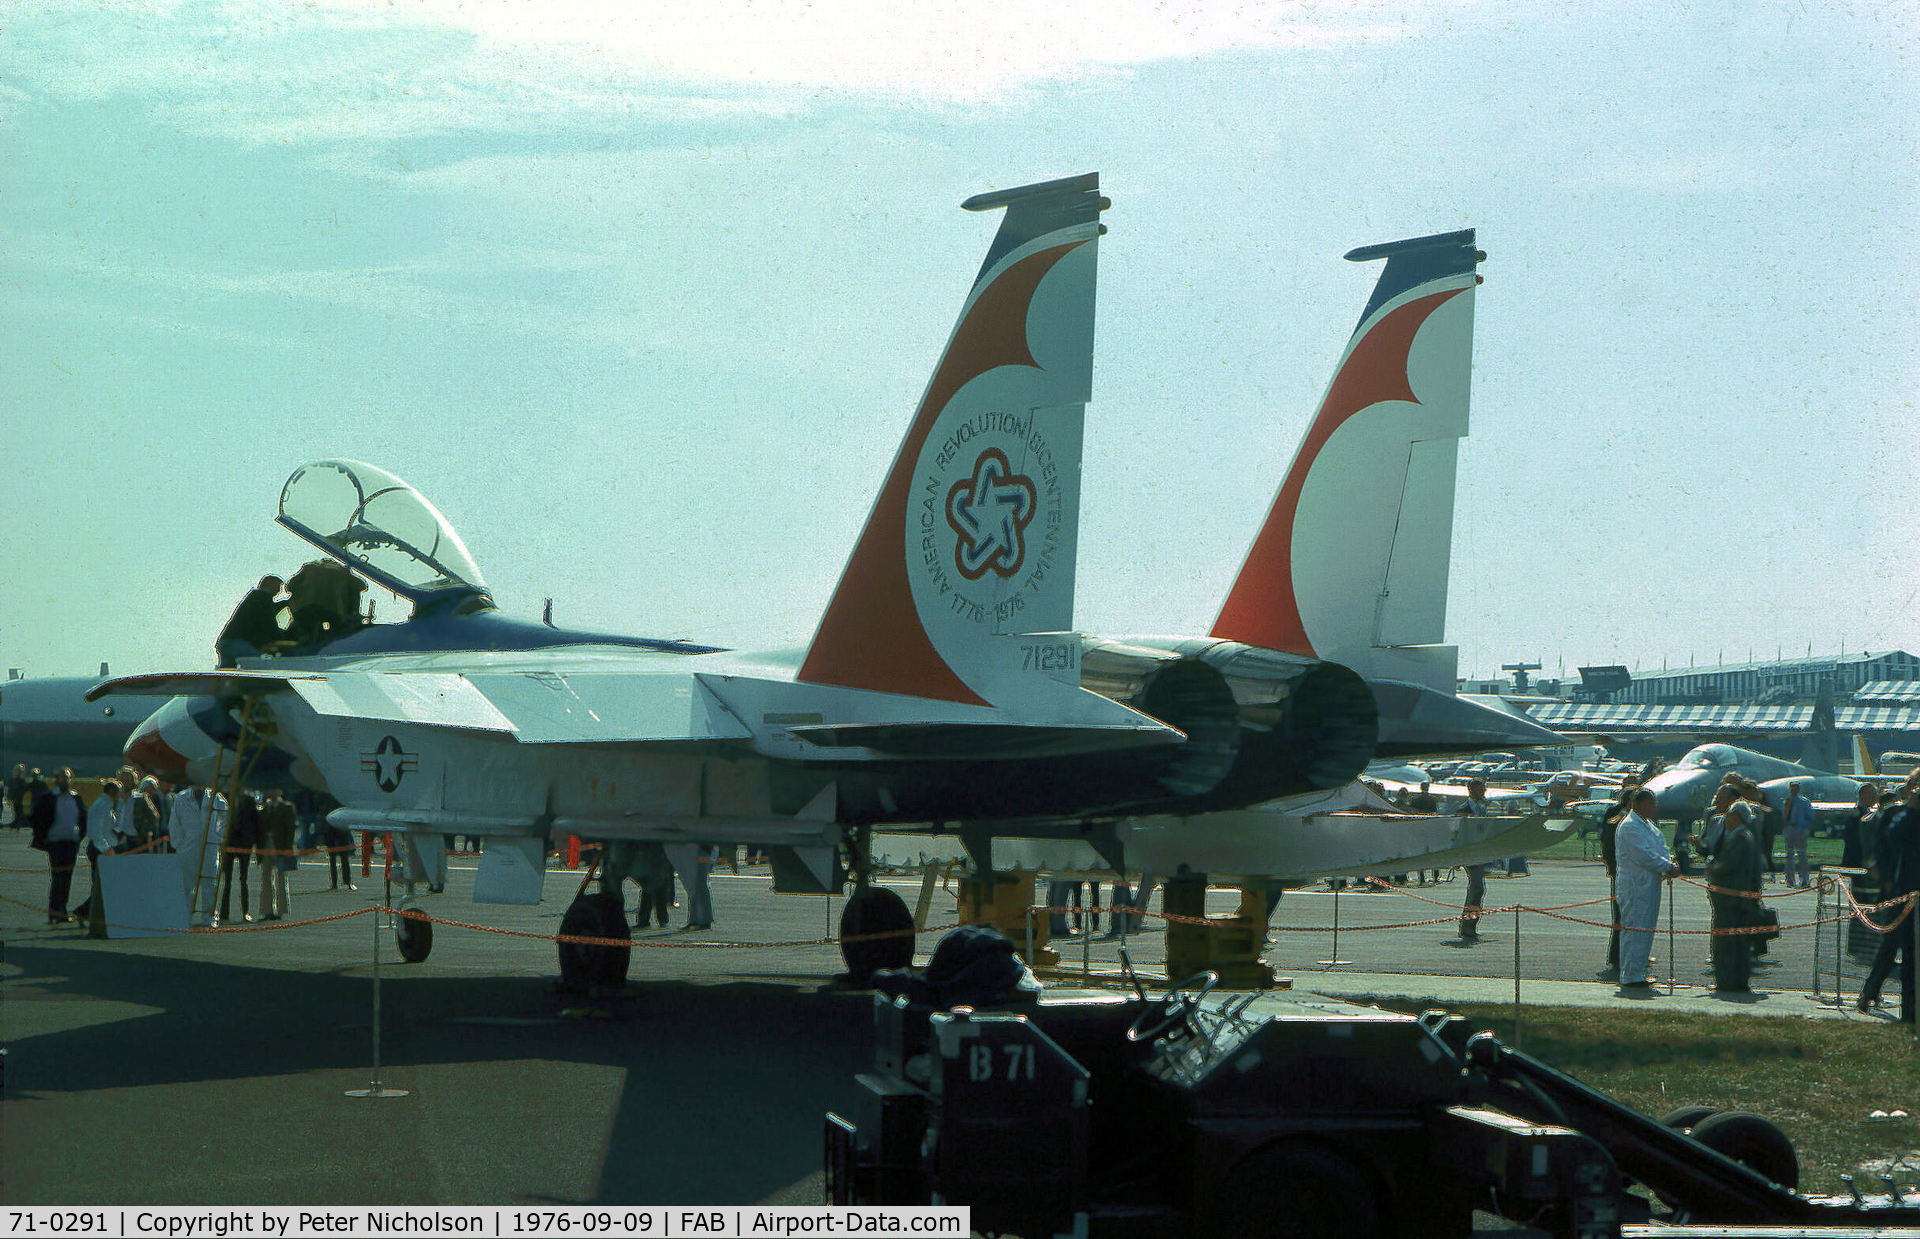 71-0291, 1973 McDonnell Douglas F-15B-4-MC Eagle C/N 0012/B002, Then known as a TF-15A Eagle, McDonnell Douglas demonstrated this aircraft at the 1976 SBAC Farnborough Airshow.